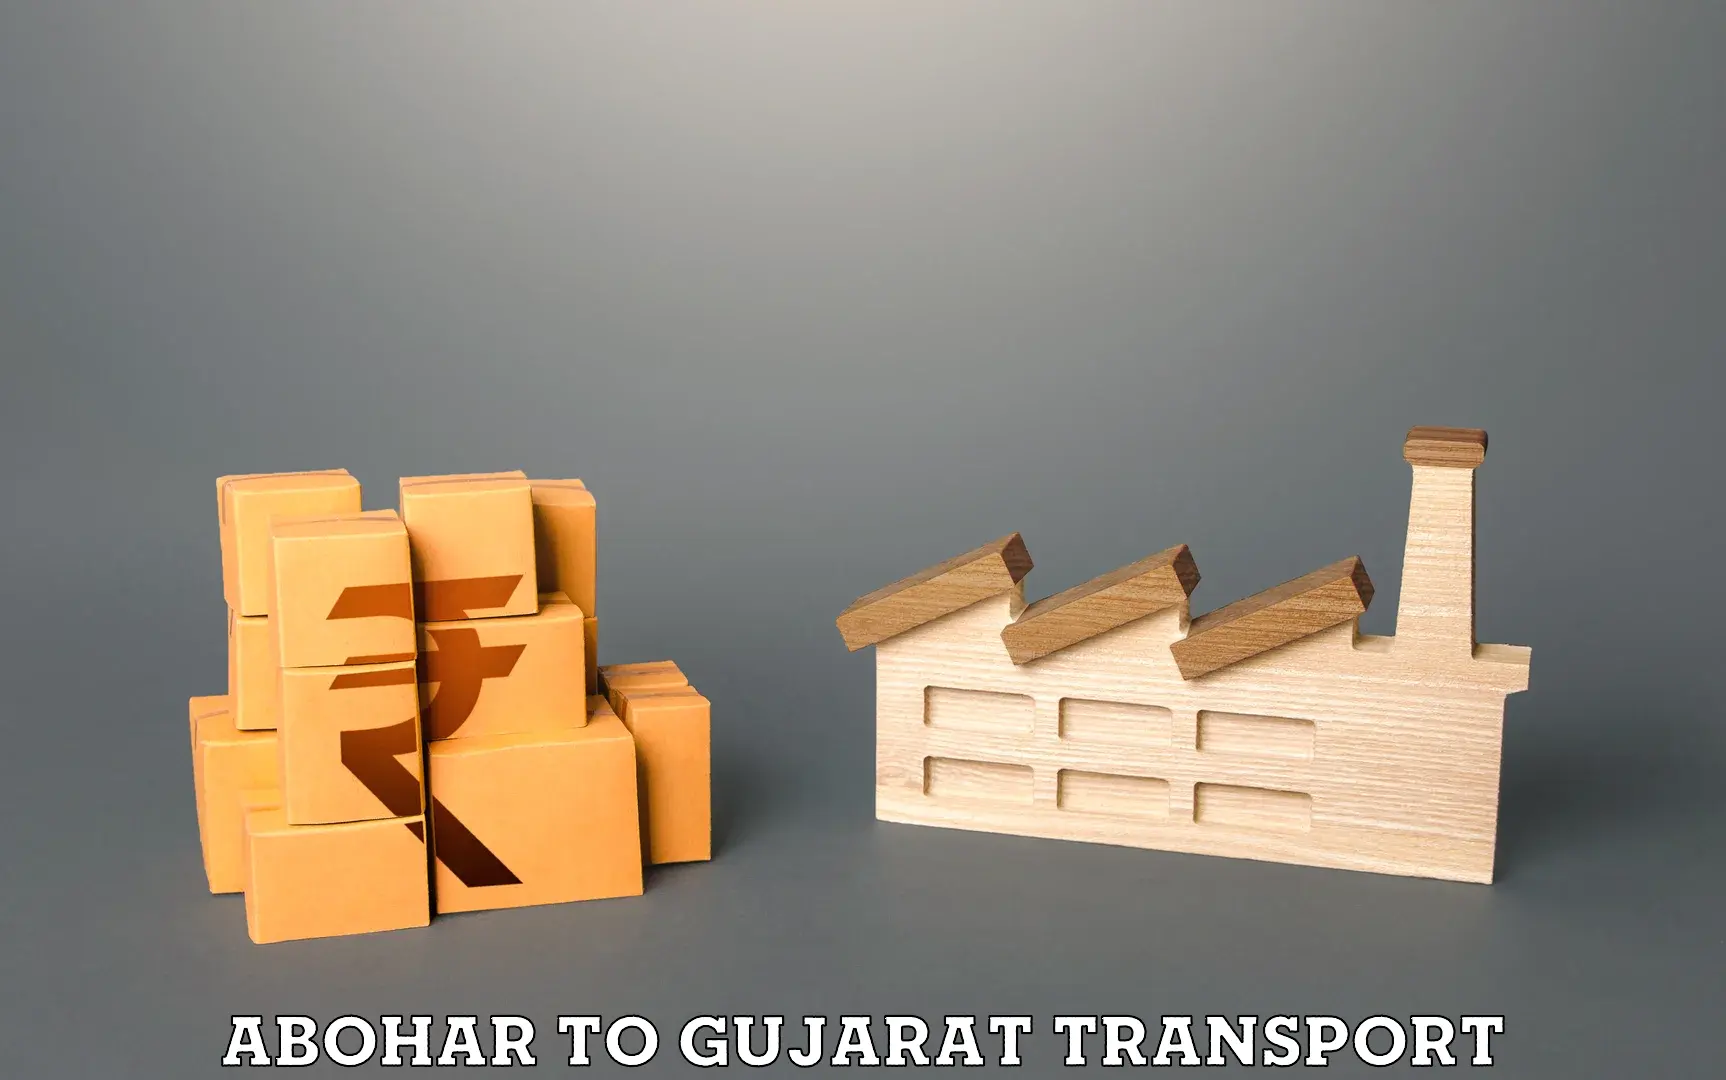 Truck transport companies in India Abohar to IIIT Surat